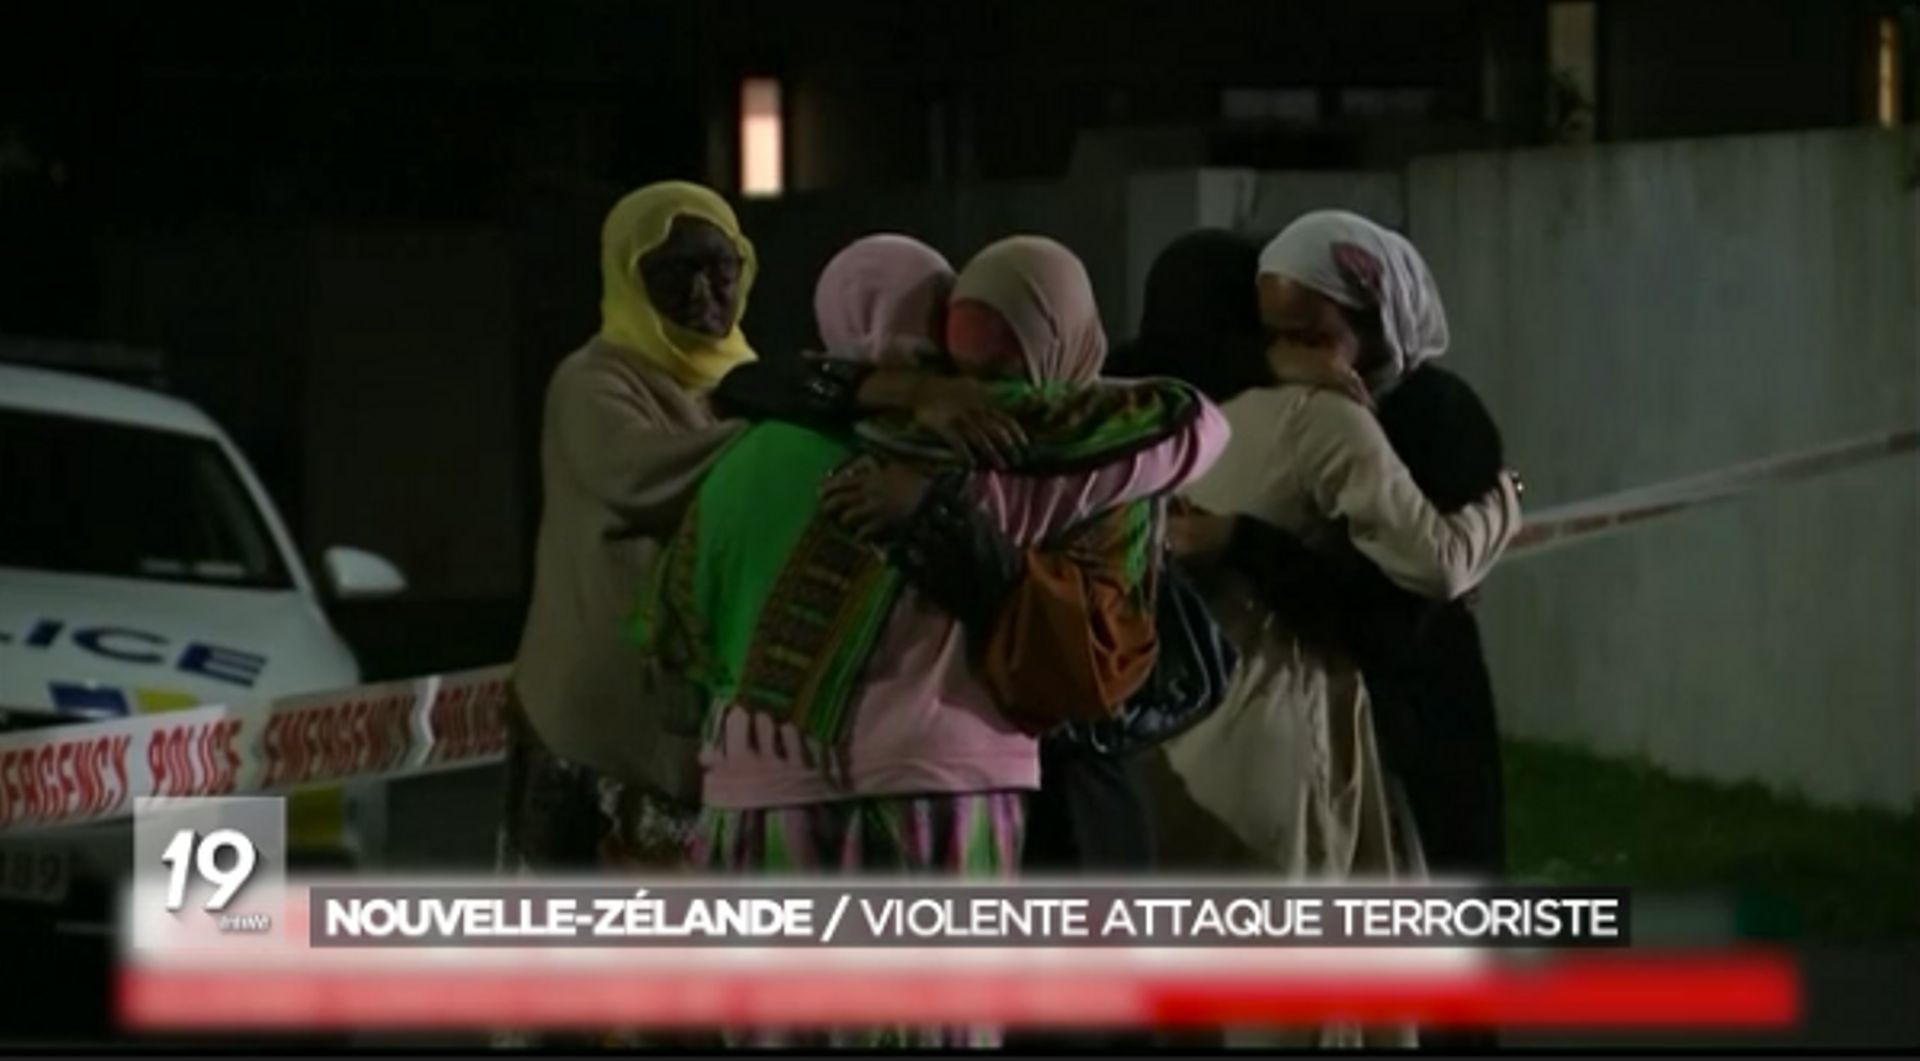 Image extraite du sujet diffusé au JT le soir du double attentat à Christchurch